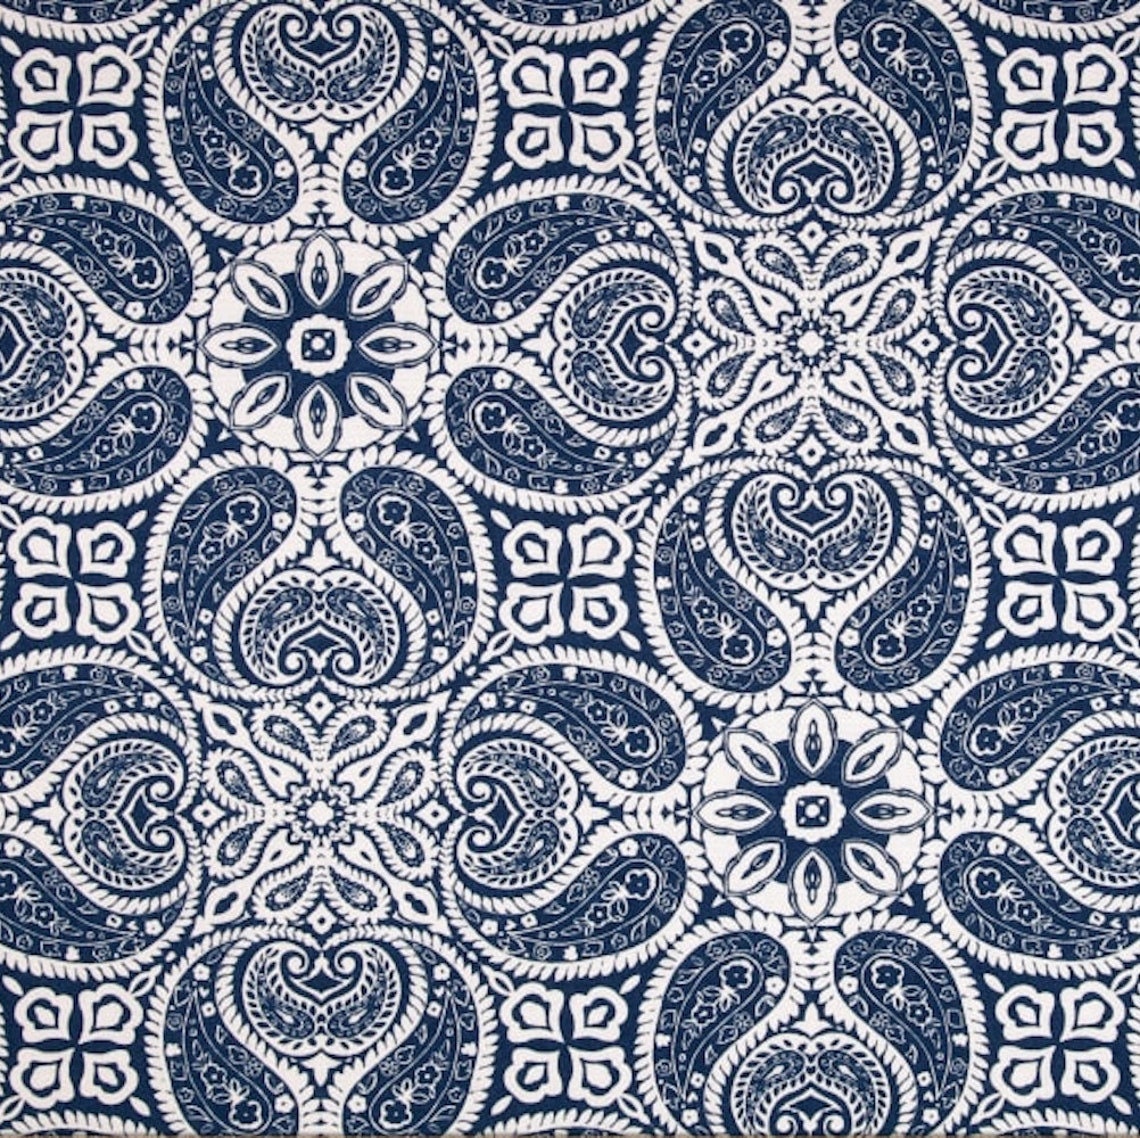 duvet cover in tibi navy blue geometric paisley